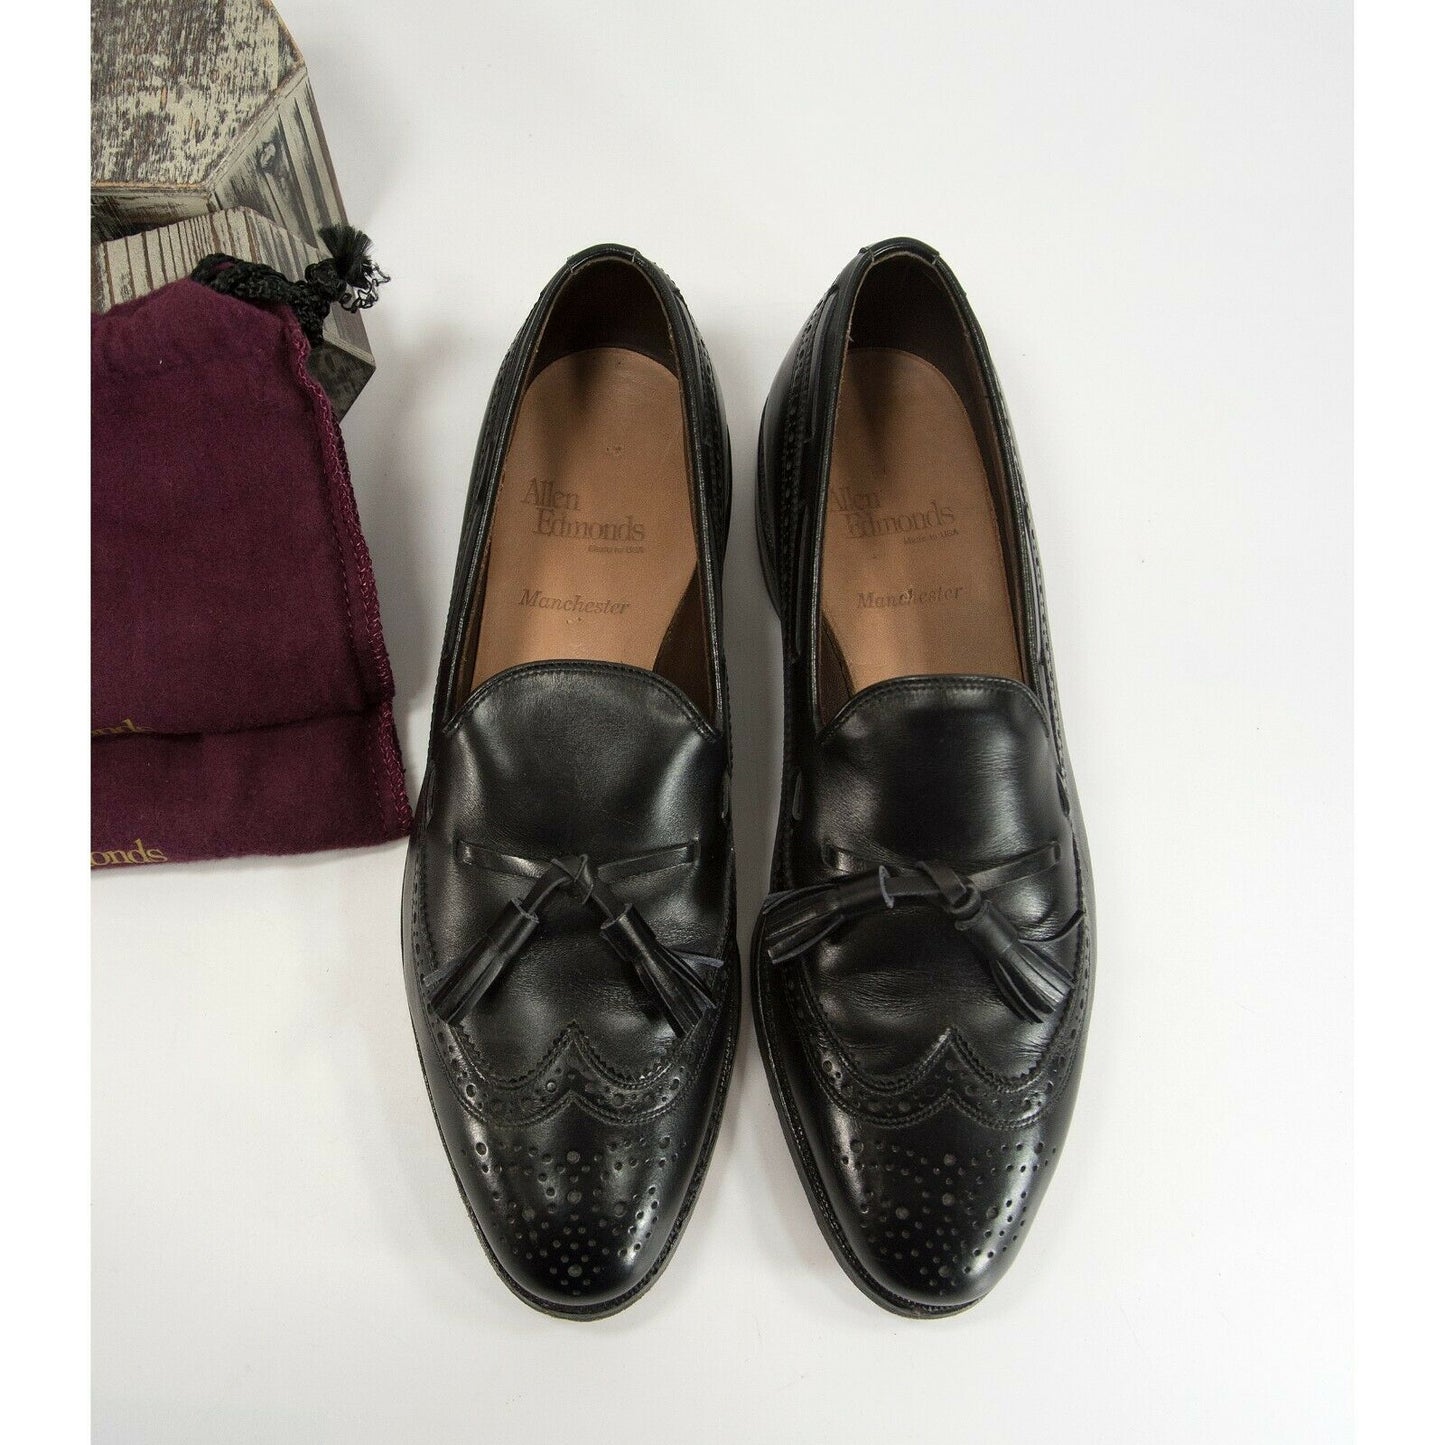 Allen Edmonds Black Leather Wing Tip Tassel Oxford Loafer Size 9